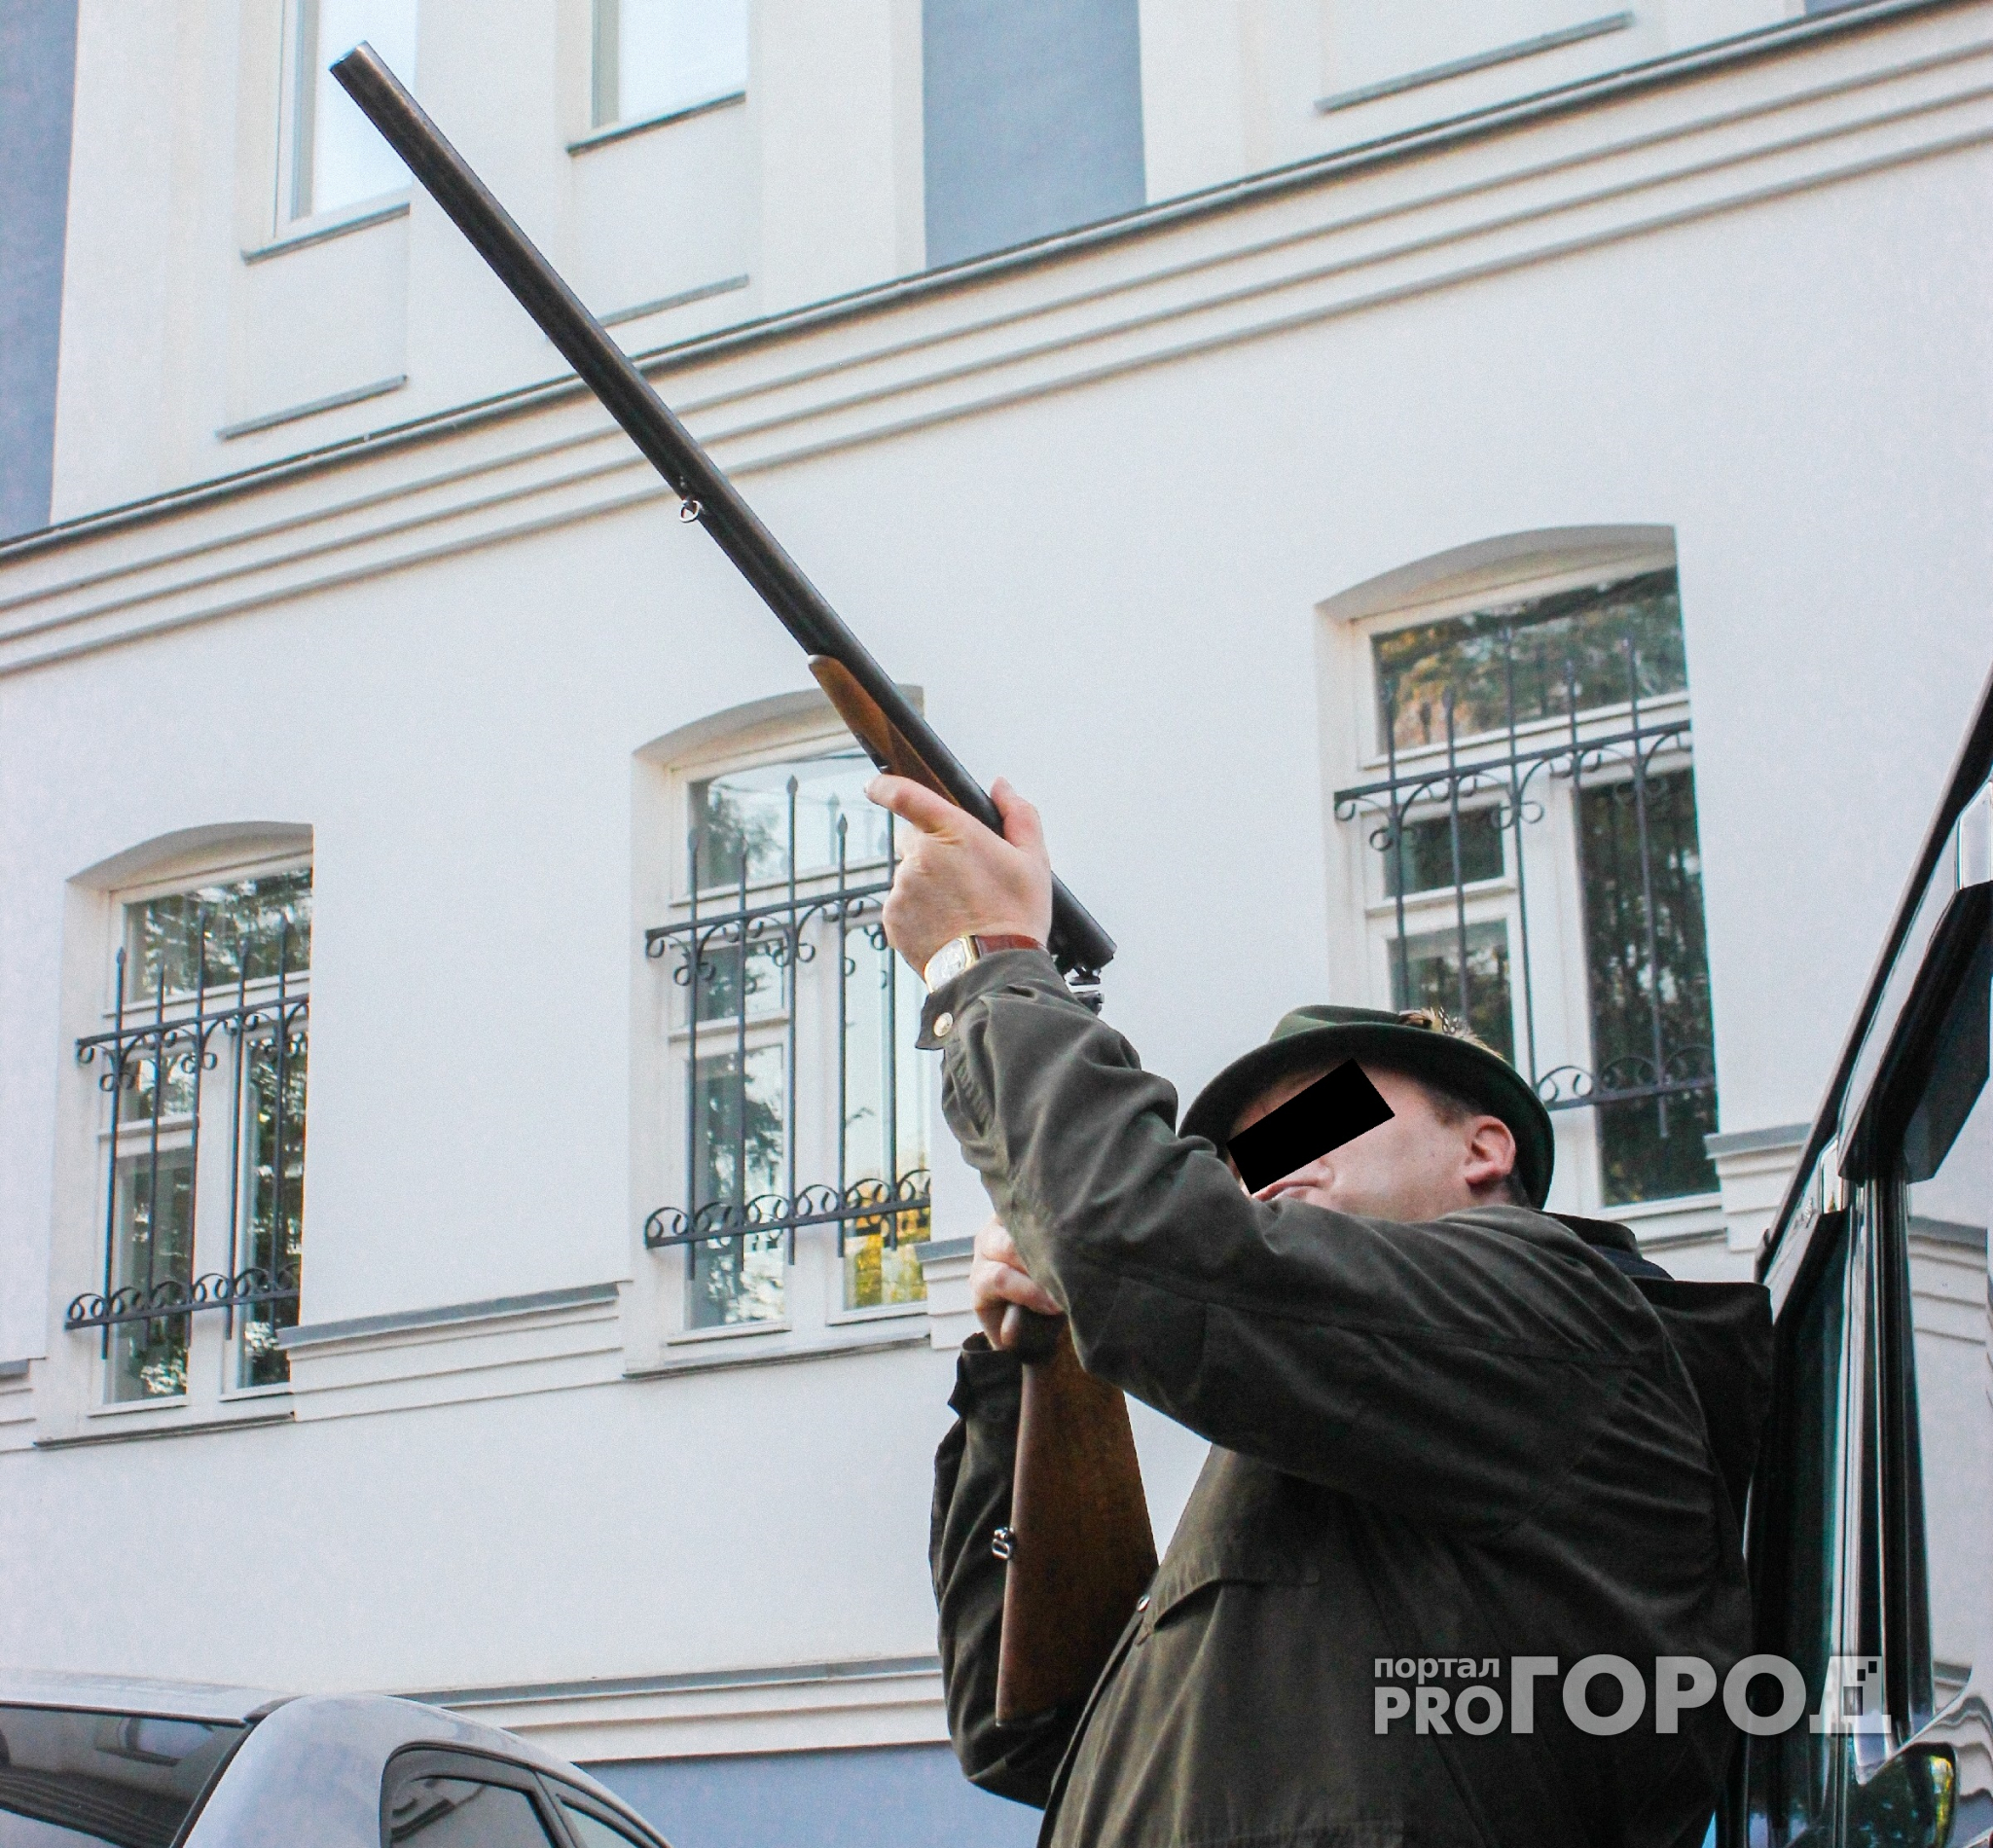 Новости России: пенсионер на охоте застрелил двух человек